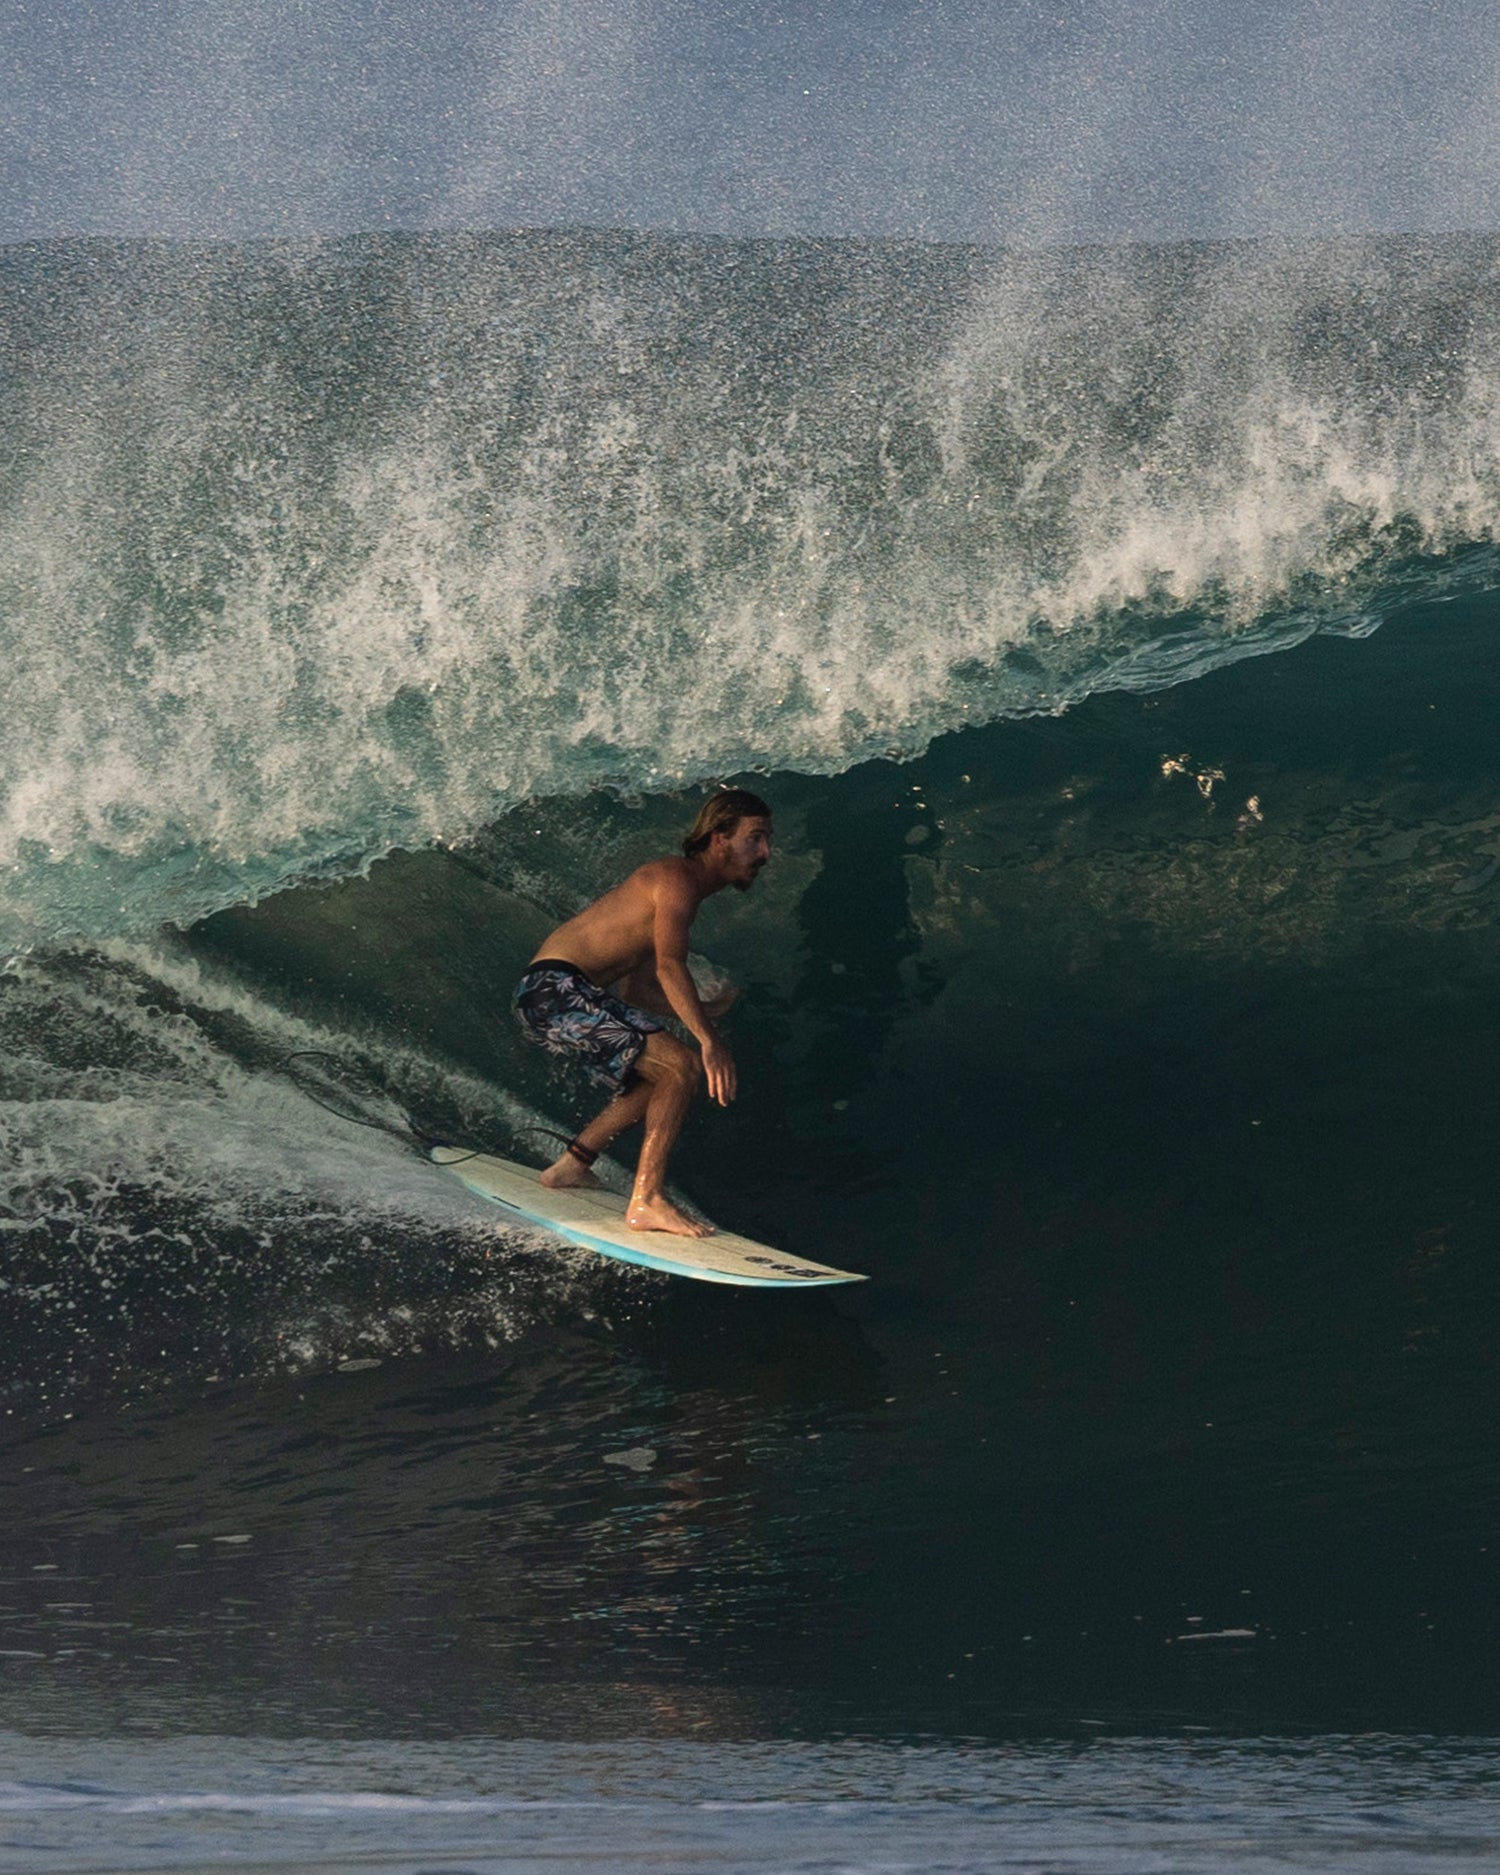 Action shot of surfer 